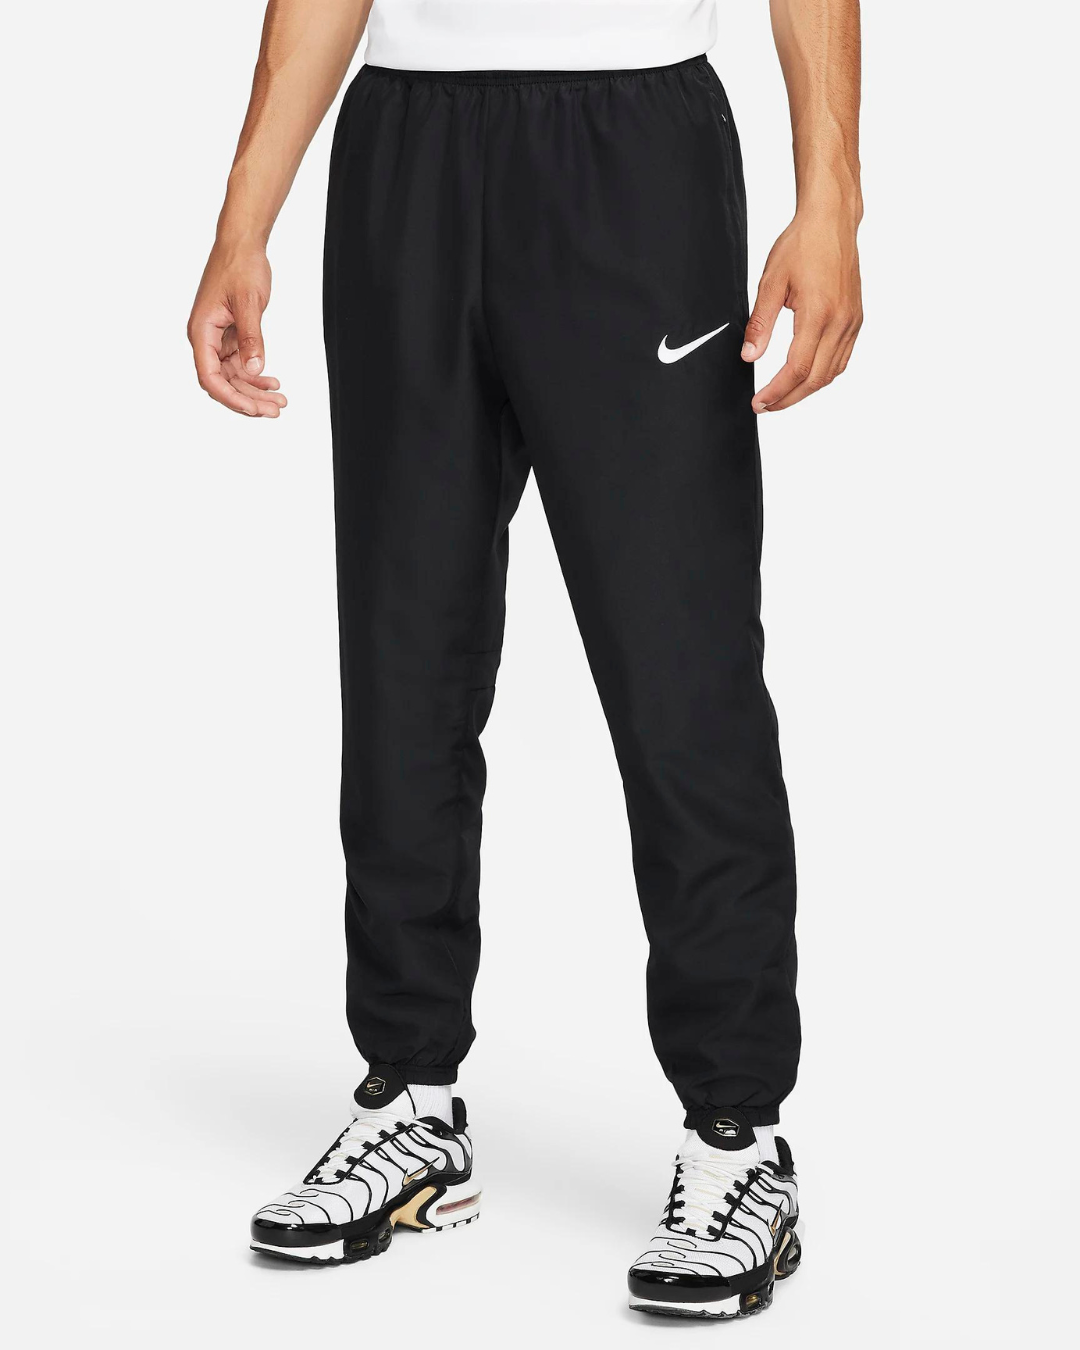 Pantaloni Nike Academy Dri-Fit - Neri